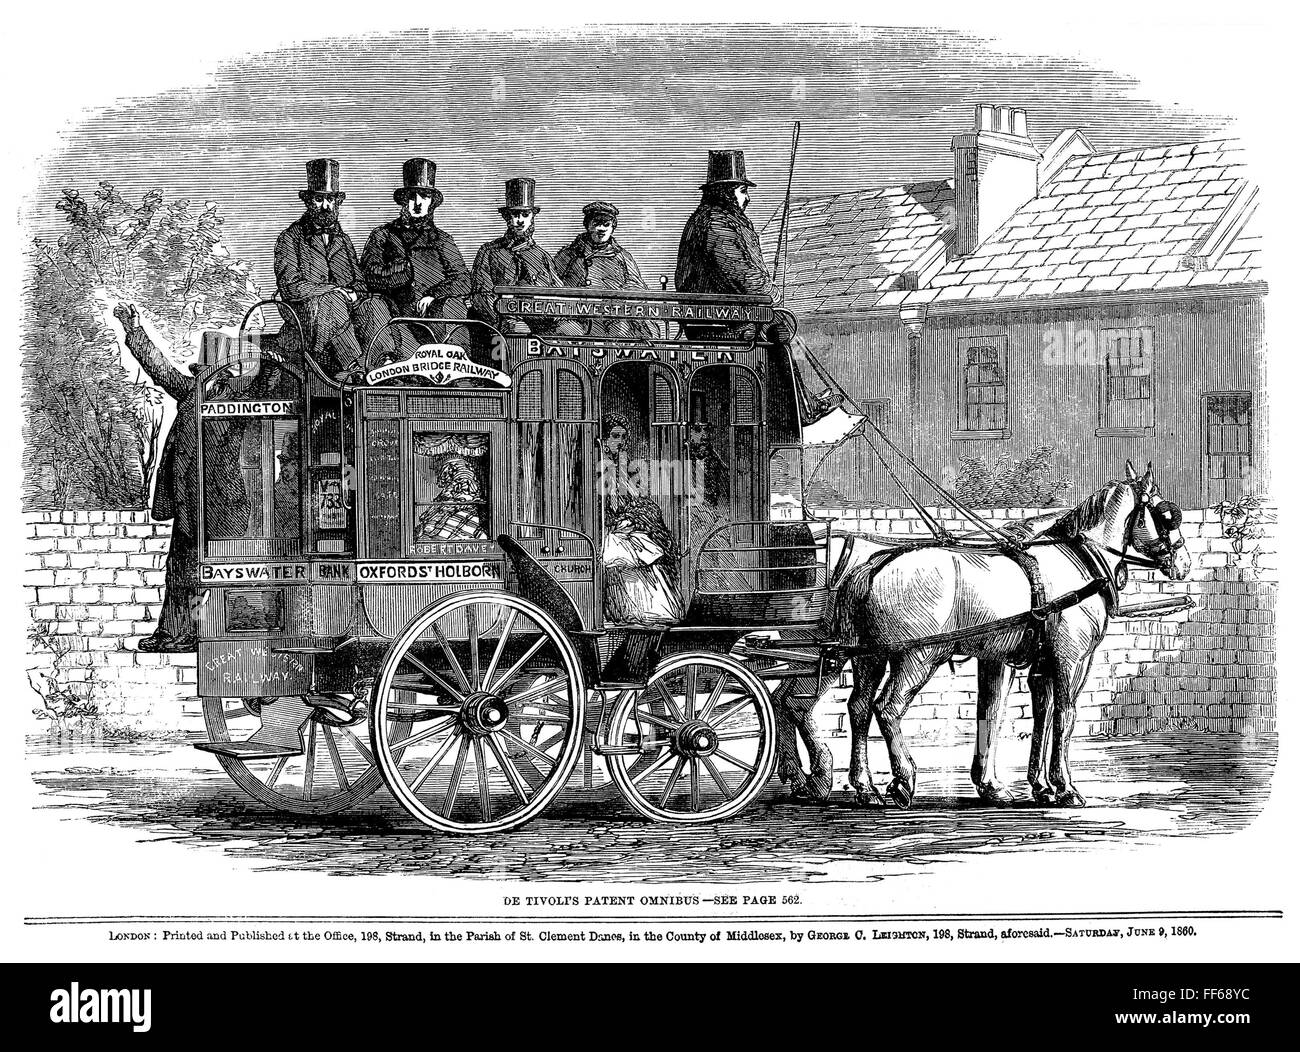 Тип кузова кареты где пассажиры сидят напротив. Омнибус Лондон 19 век. Омнибус в США 19 век. Омнибус транспорт 19 века. Омнибус в Англии 18 века.